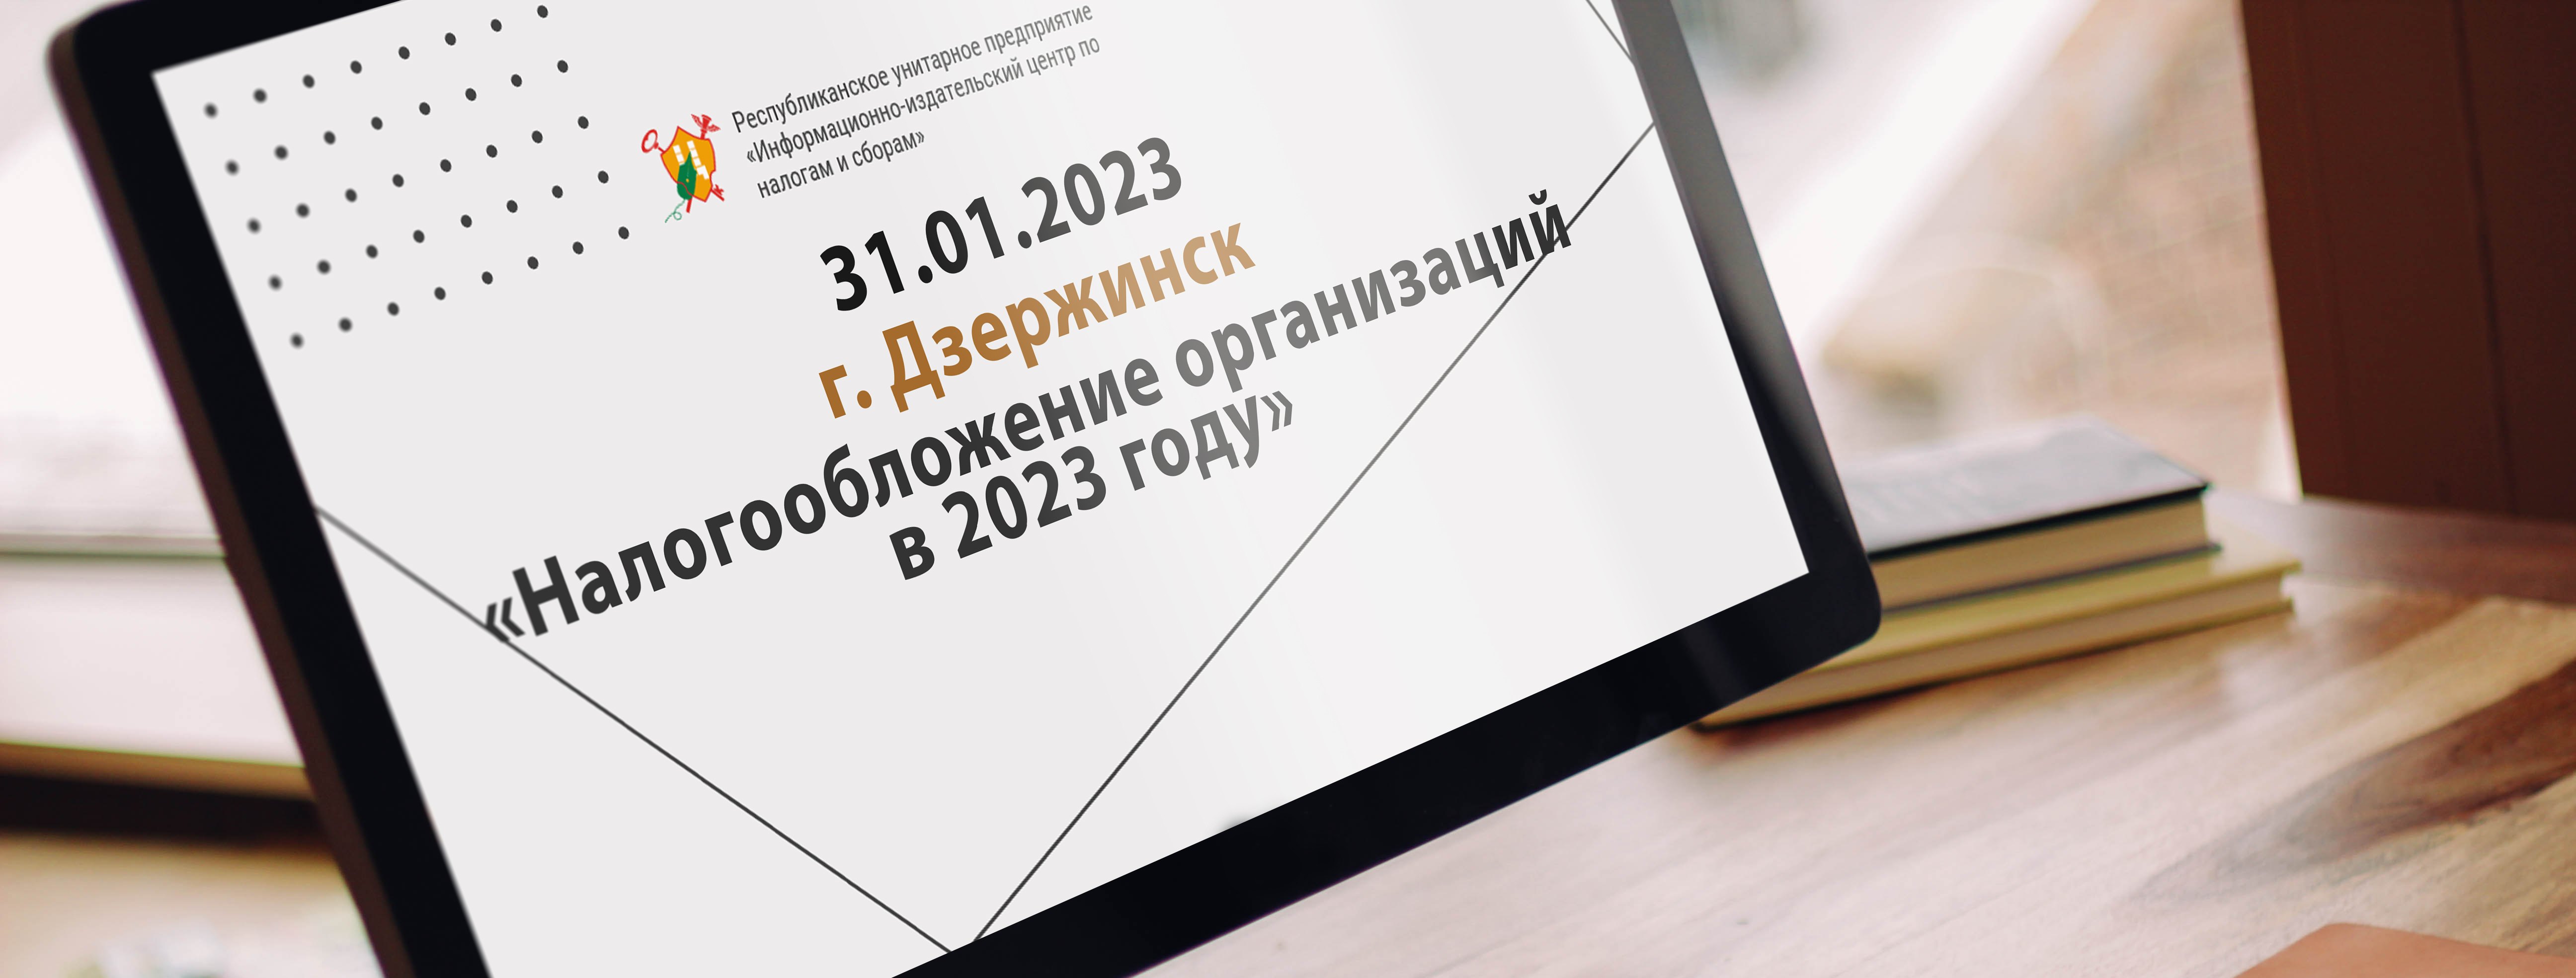 31.01.2023 г. Дзержинск «Налогообложение организаций в 2023 году»